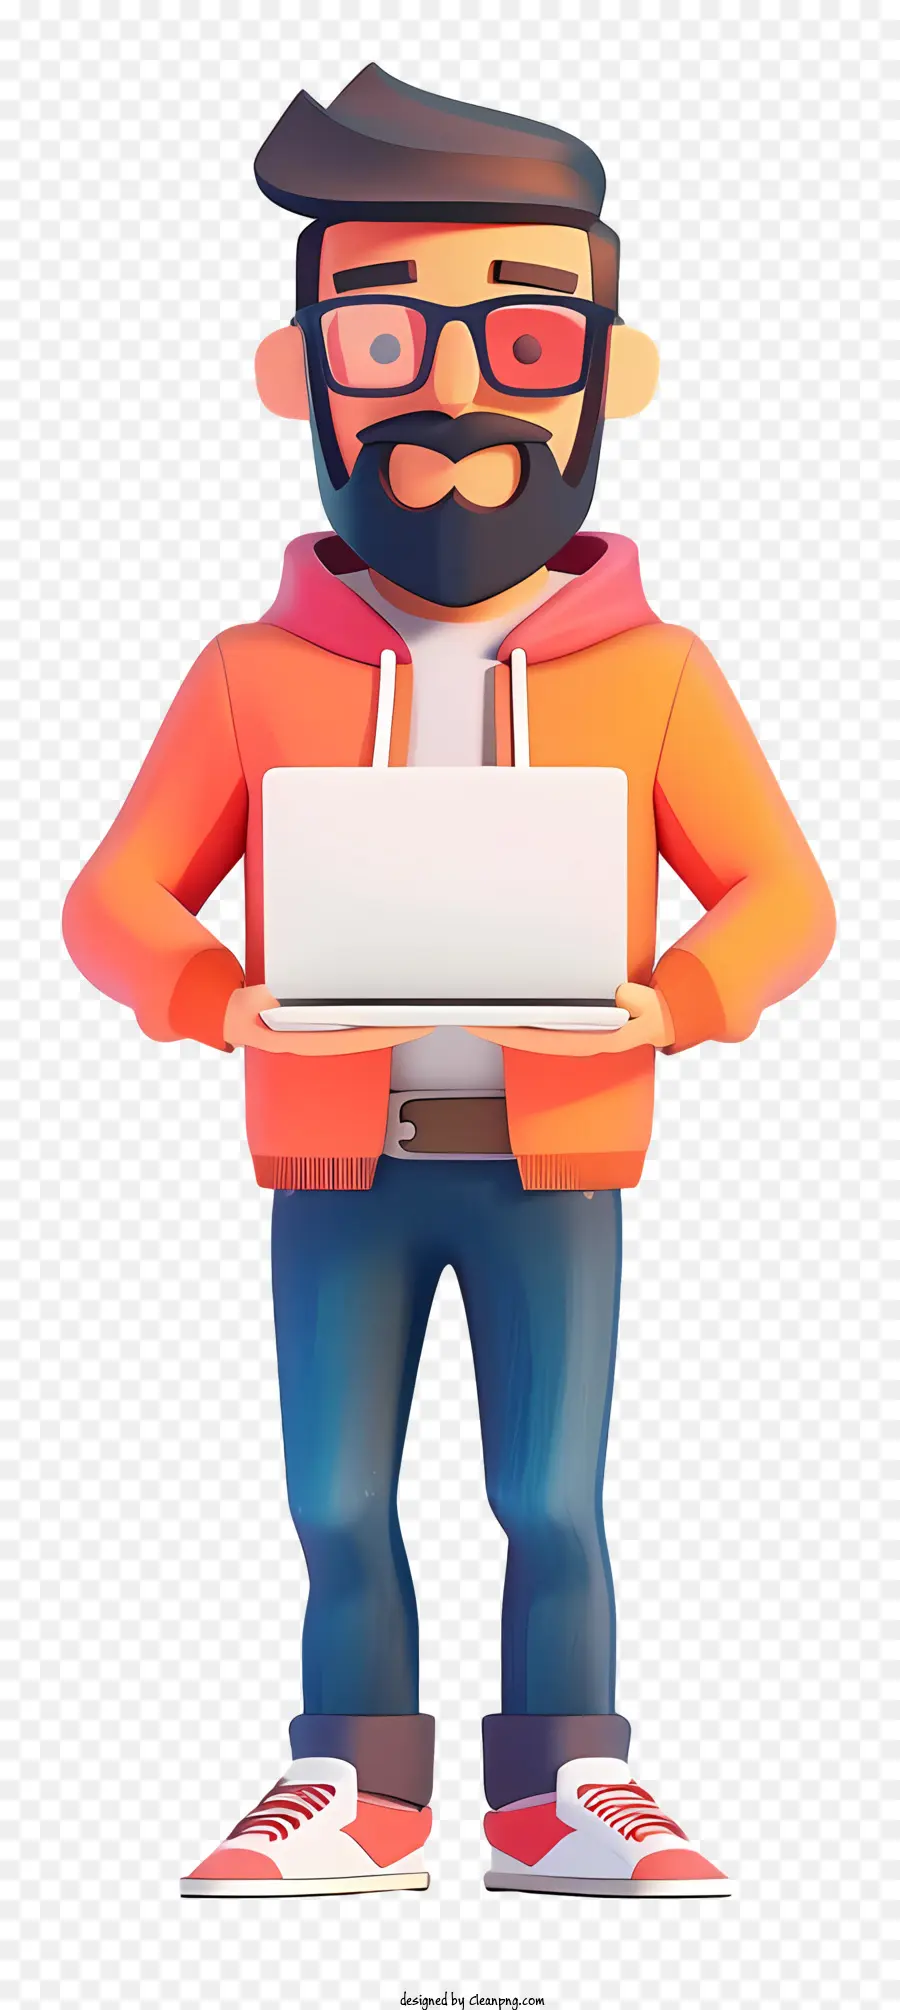 bicchieri - Programmatore di cartoni animati in felpa con cappuccio arancione con laptop